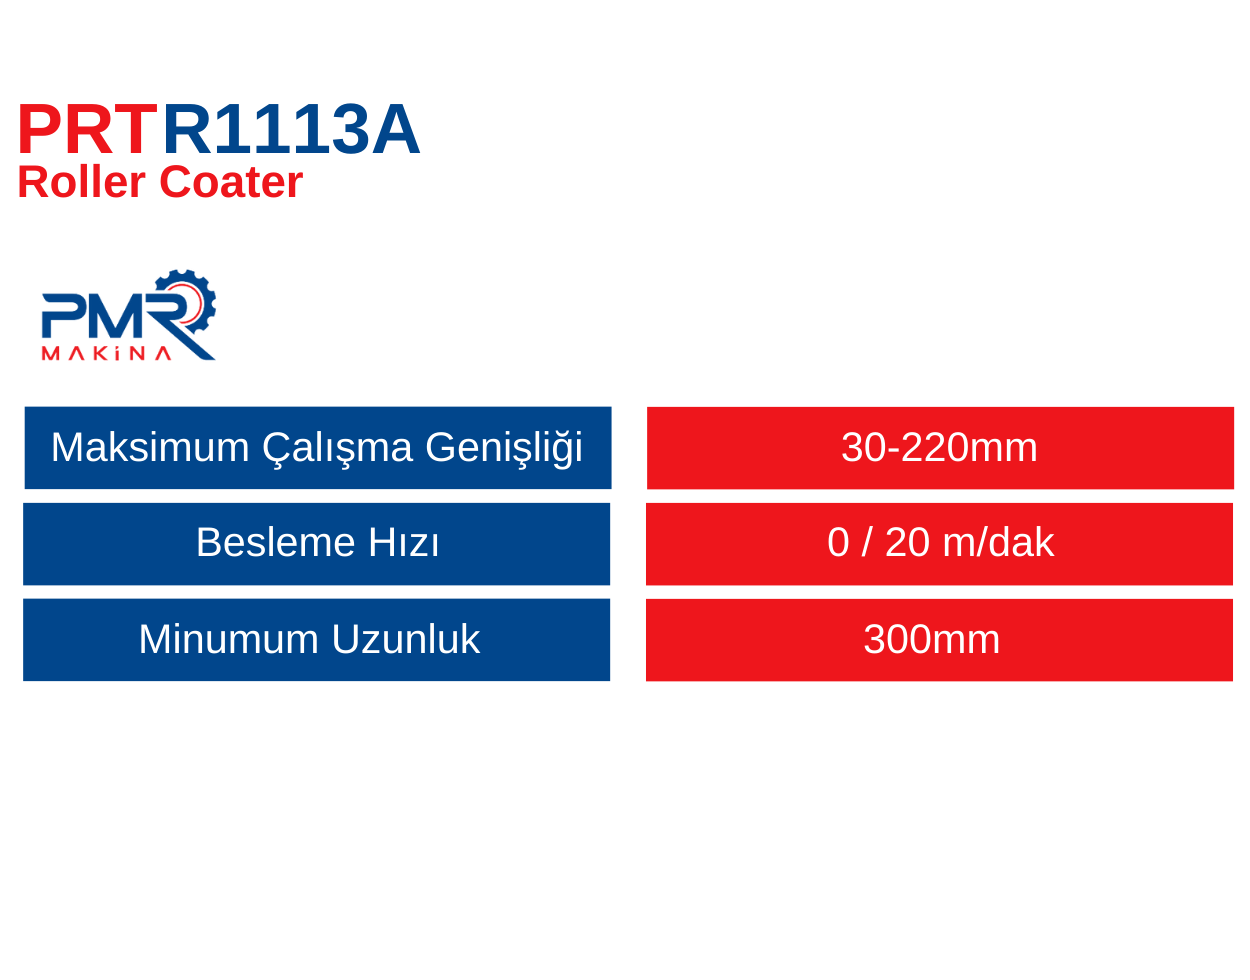 prtr1113a-Roller-Coater